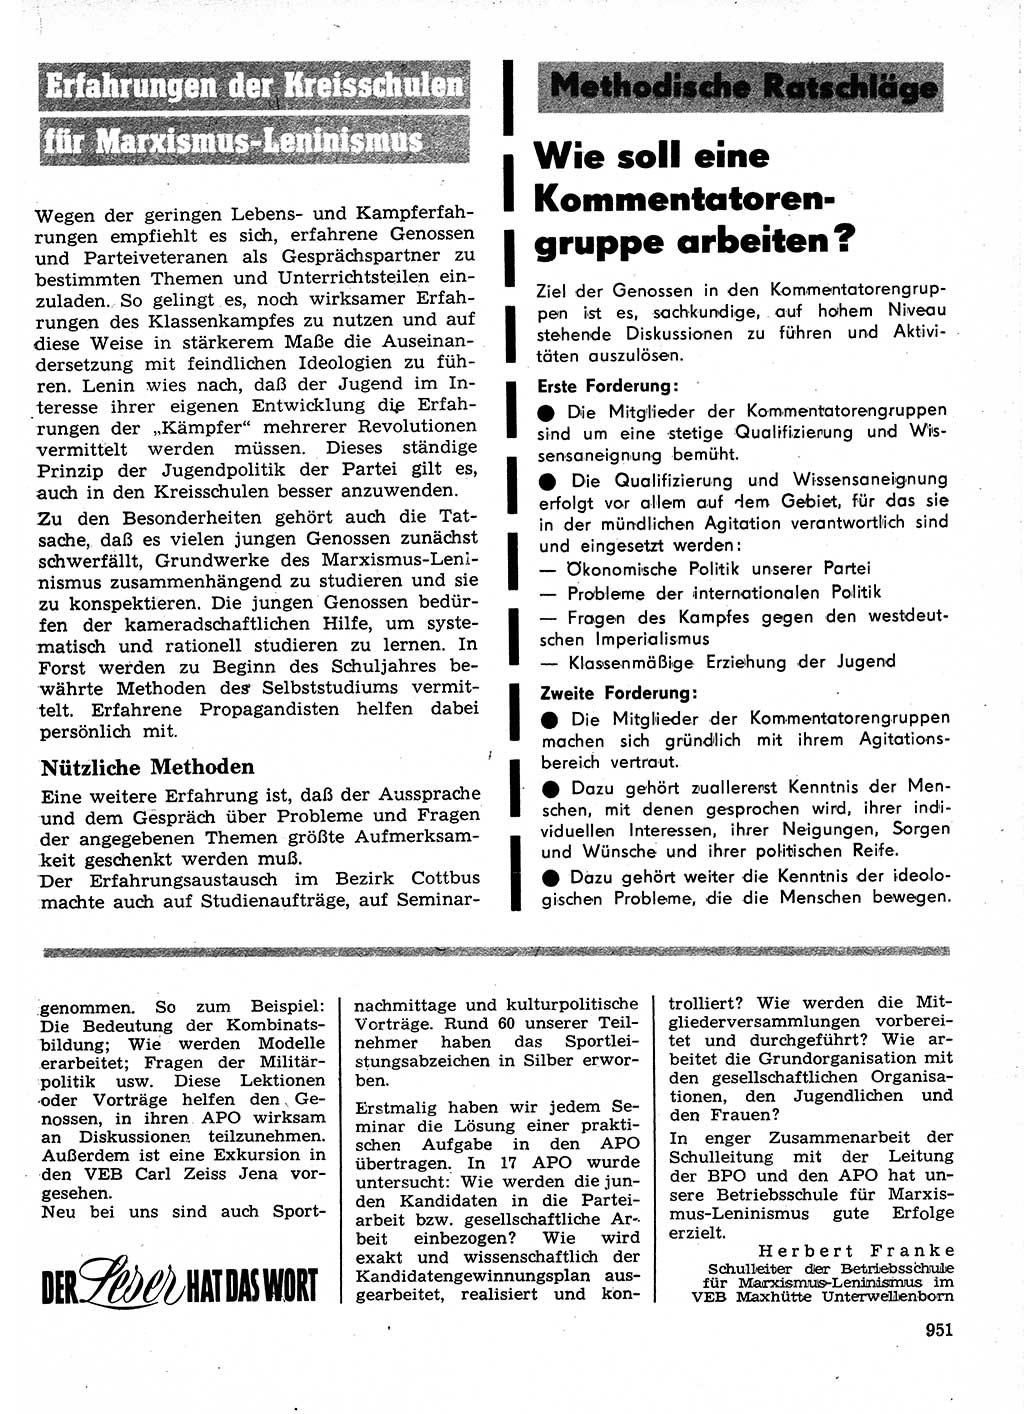 Neuer Weg (NW), Organ des Zentralkomitees (ZK) der SED (Sozialistische Einheitspartei Deutschlands) für Fragen des Parteilebens, 24. Jahrgang [Deutsche Demokratische Republik (DDR)] 1969, Seite 951 (NW ZK SED DDR 1969, S. 951)